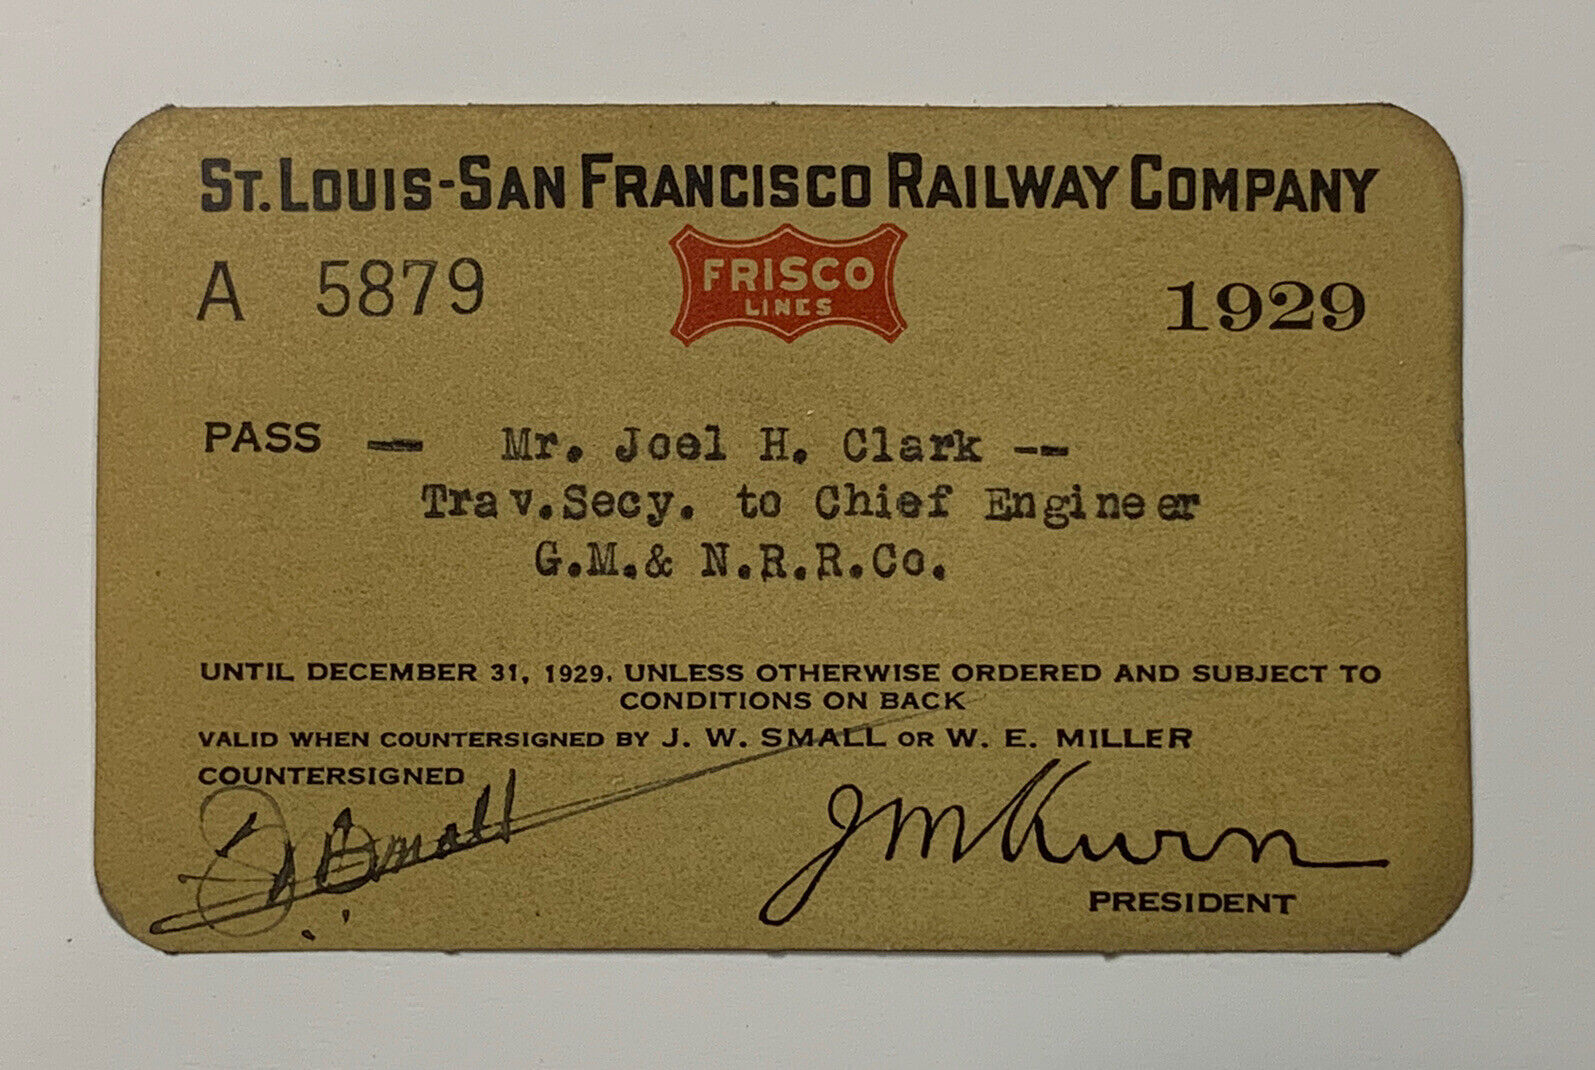 VINTAGE TRAIN PASS: 1929 FRISCO LINES - St Louis - San Francisco Railway Co.